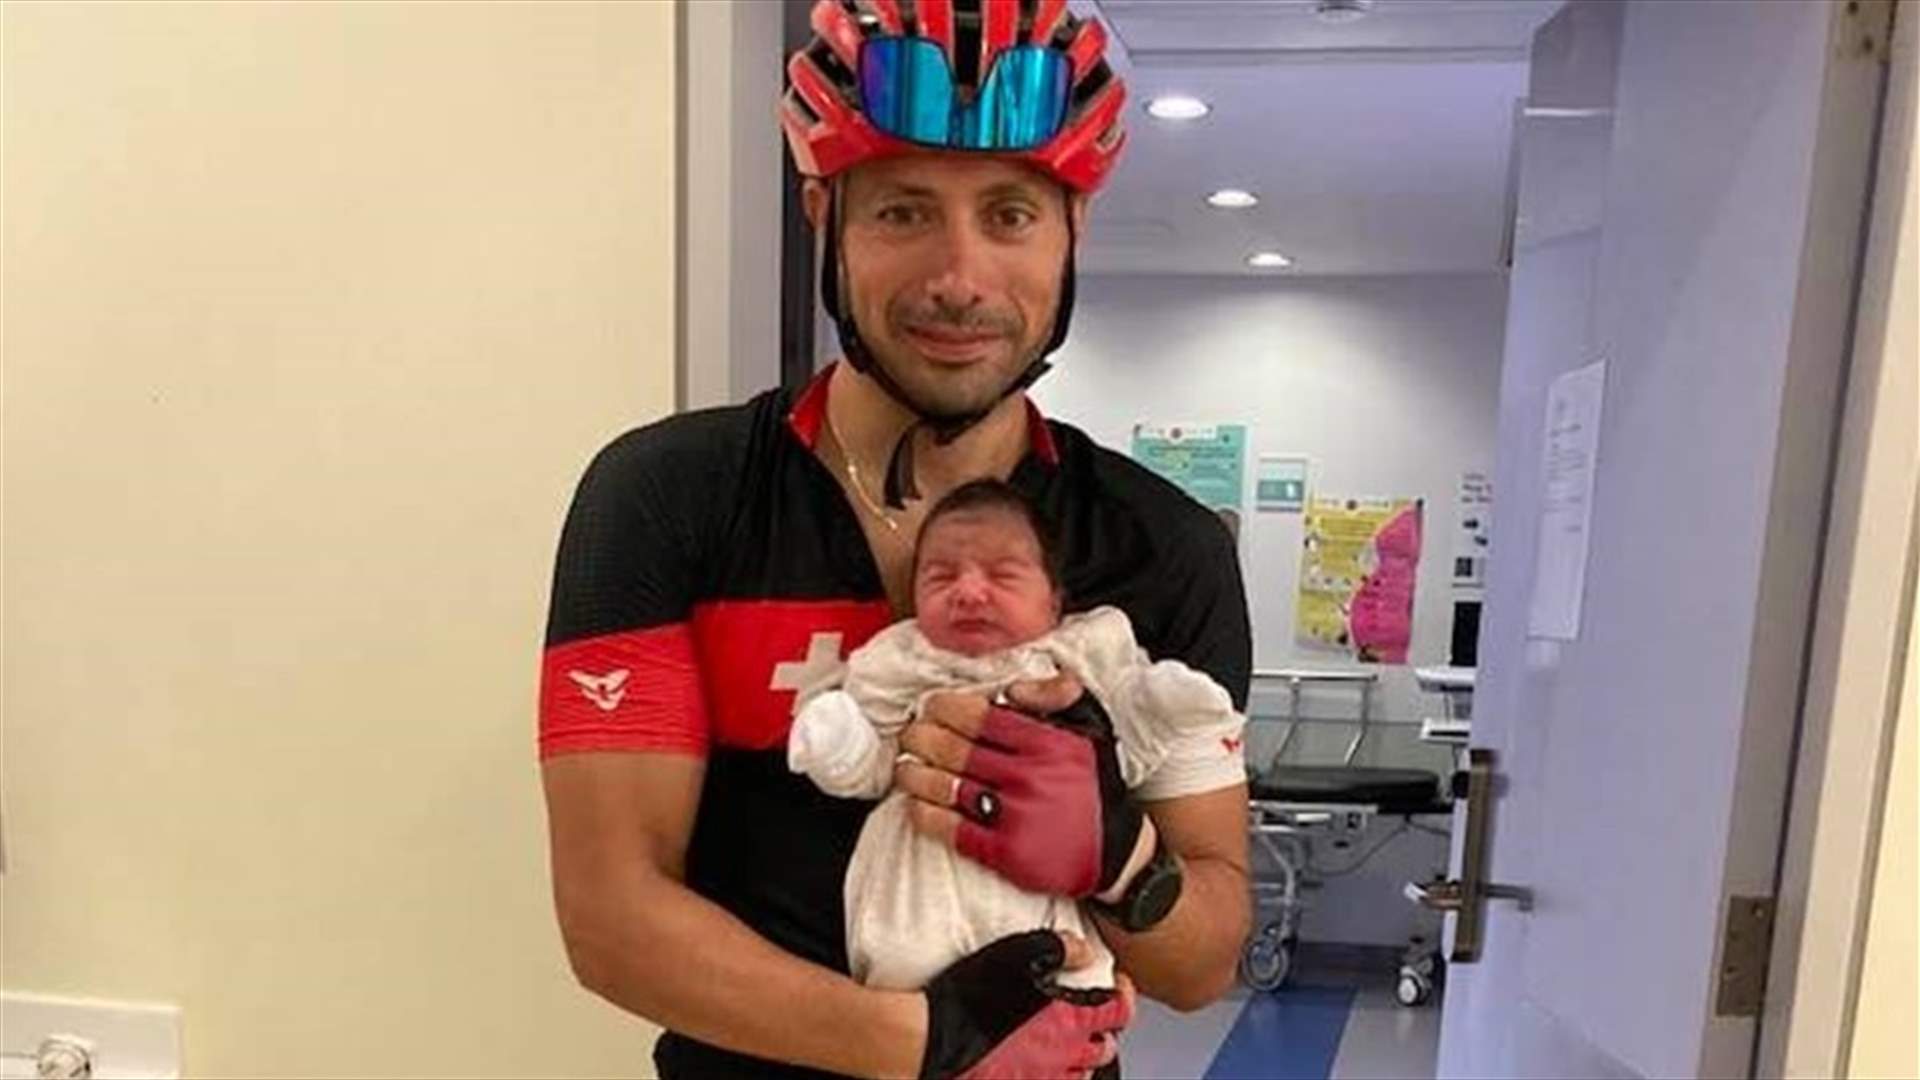 صورة طبيب لبناني هزّت مواقع التواصل الاجتماعي... حضر إلى المستشفى على متن دراجة هوائية لإتمام عملية ولادة!